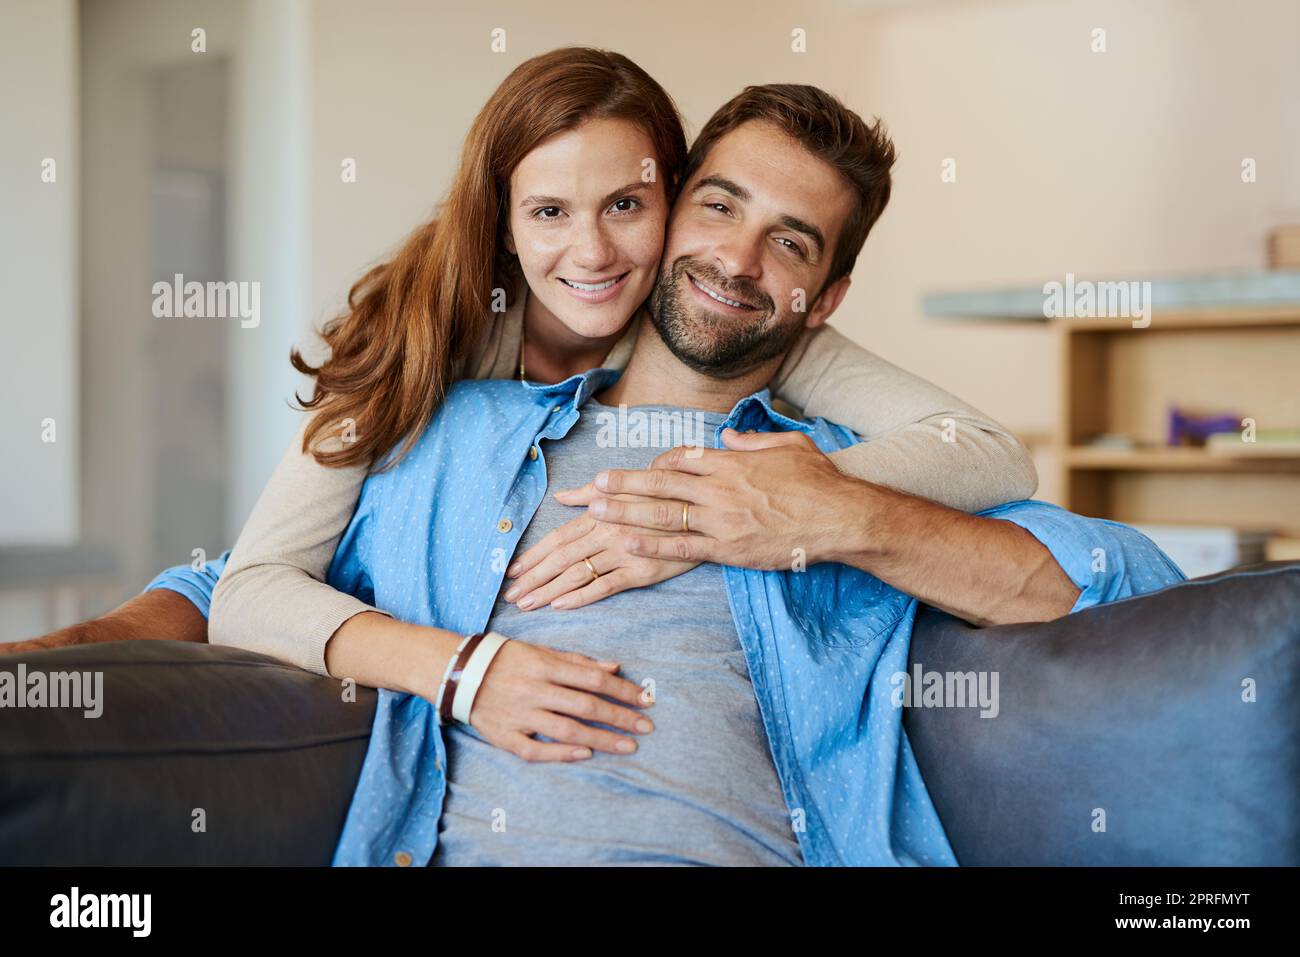 Questo è il tema della vita. Ritratto corto di una giovane coppia affettuosa che si rilassa sul divano di casa. Foto Stock